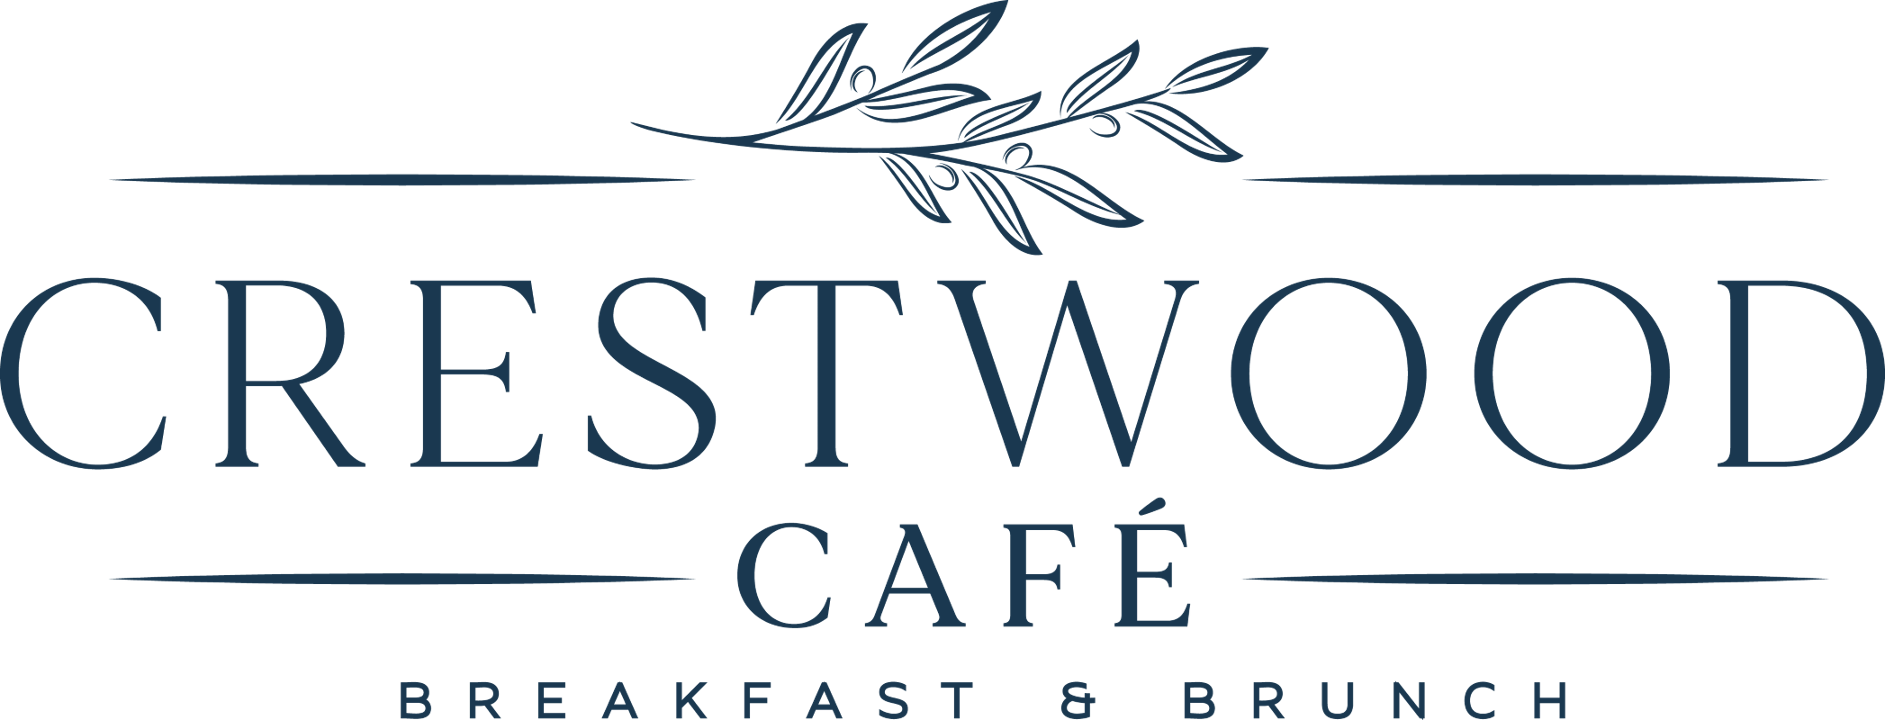 Crestwood Cafe